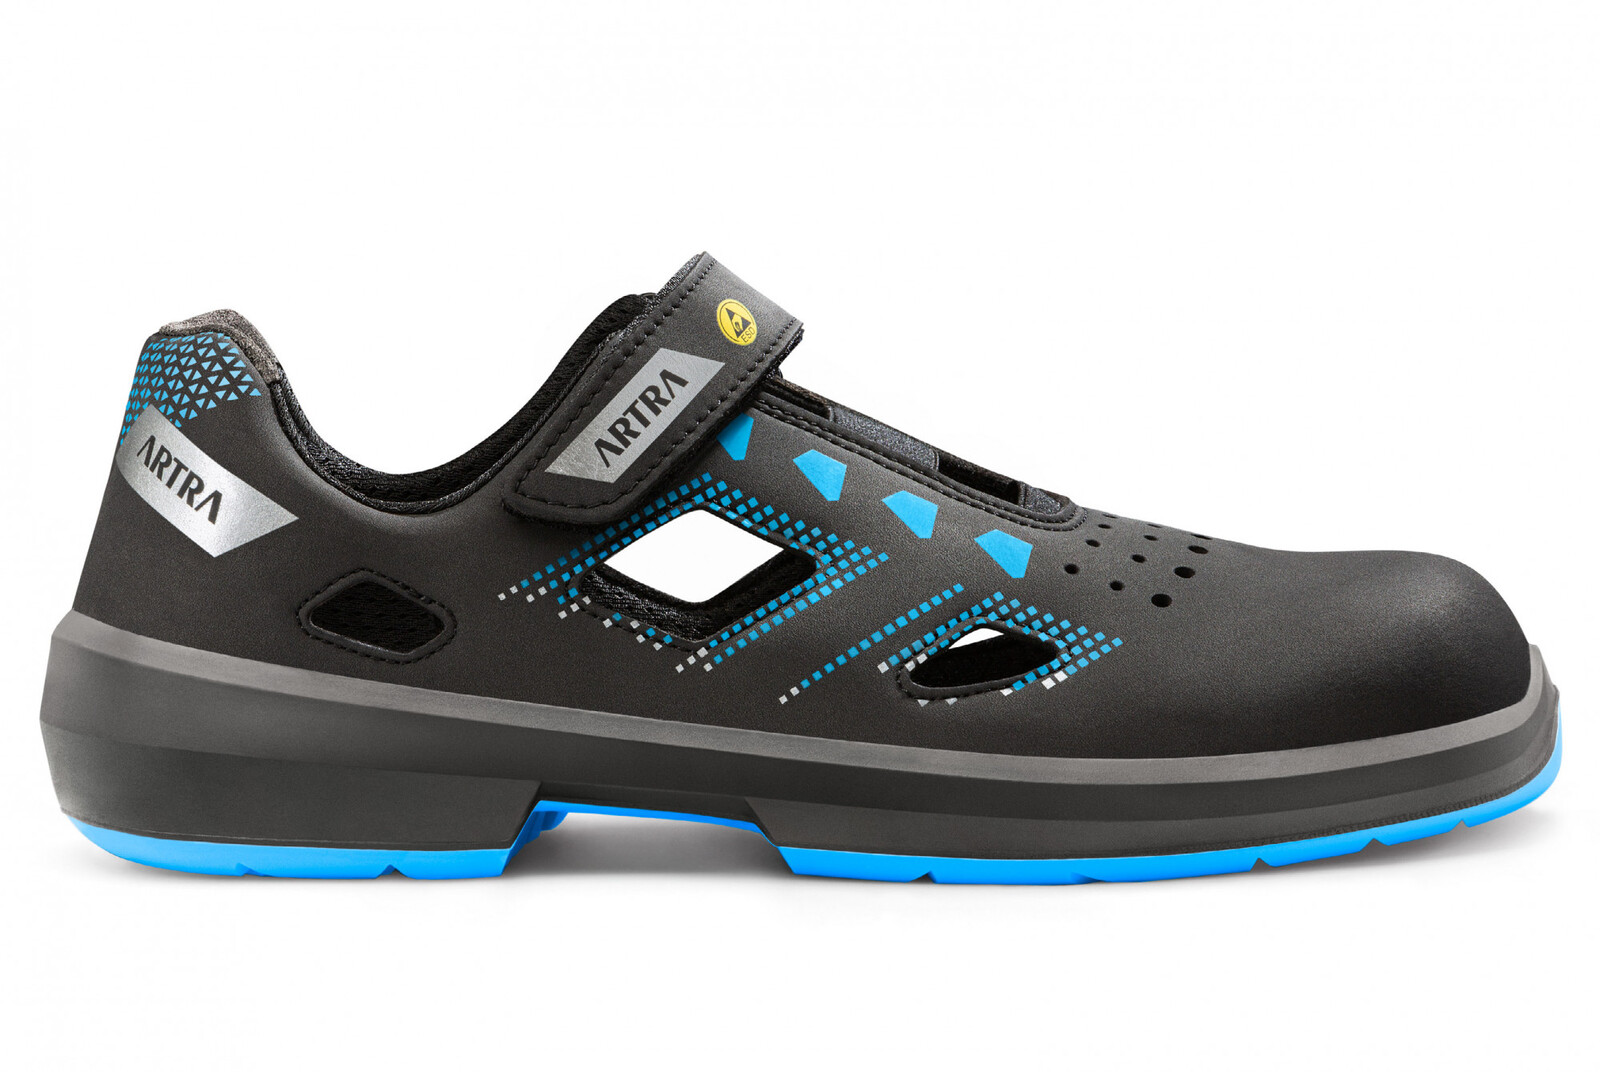 Bezpečnostné sandále Artra Arzo 805 619090 S1P SRC ESD MF - veľkosť: 41, farba: čierna/modrá